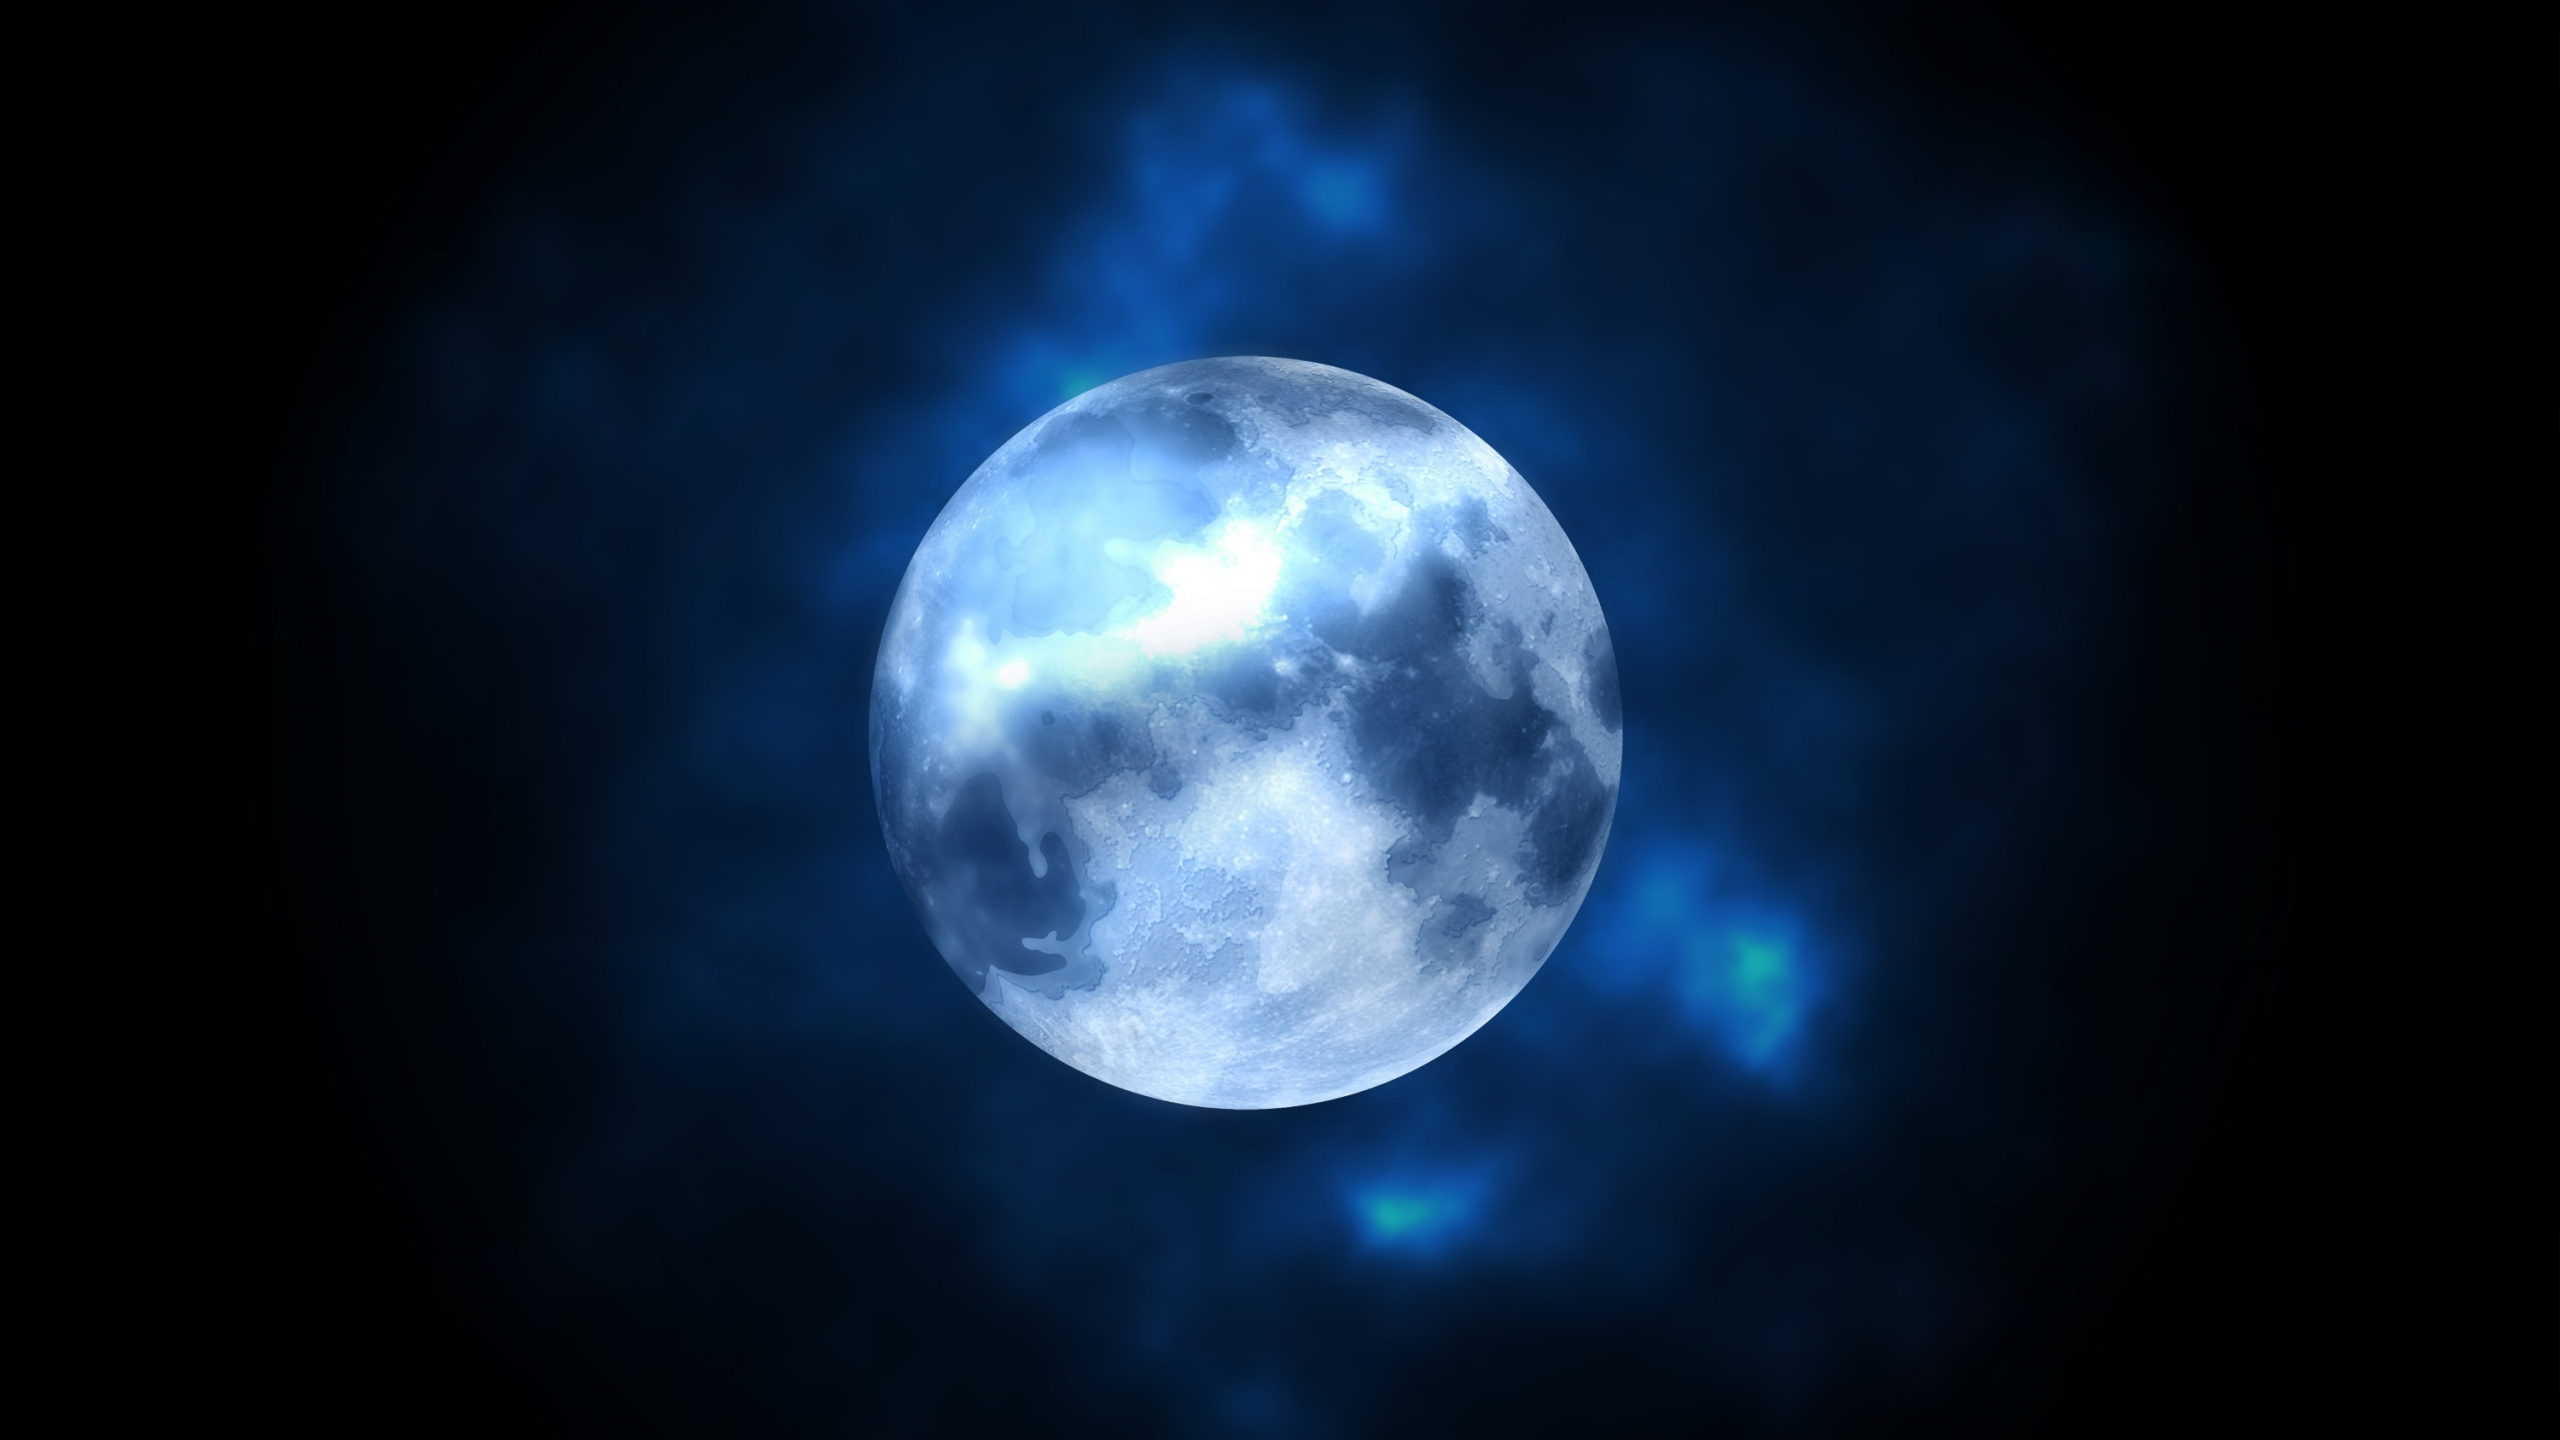 Blaue Und Weiße Mondillustration. Wallpaper in 2560x1440 Resolution